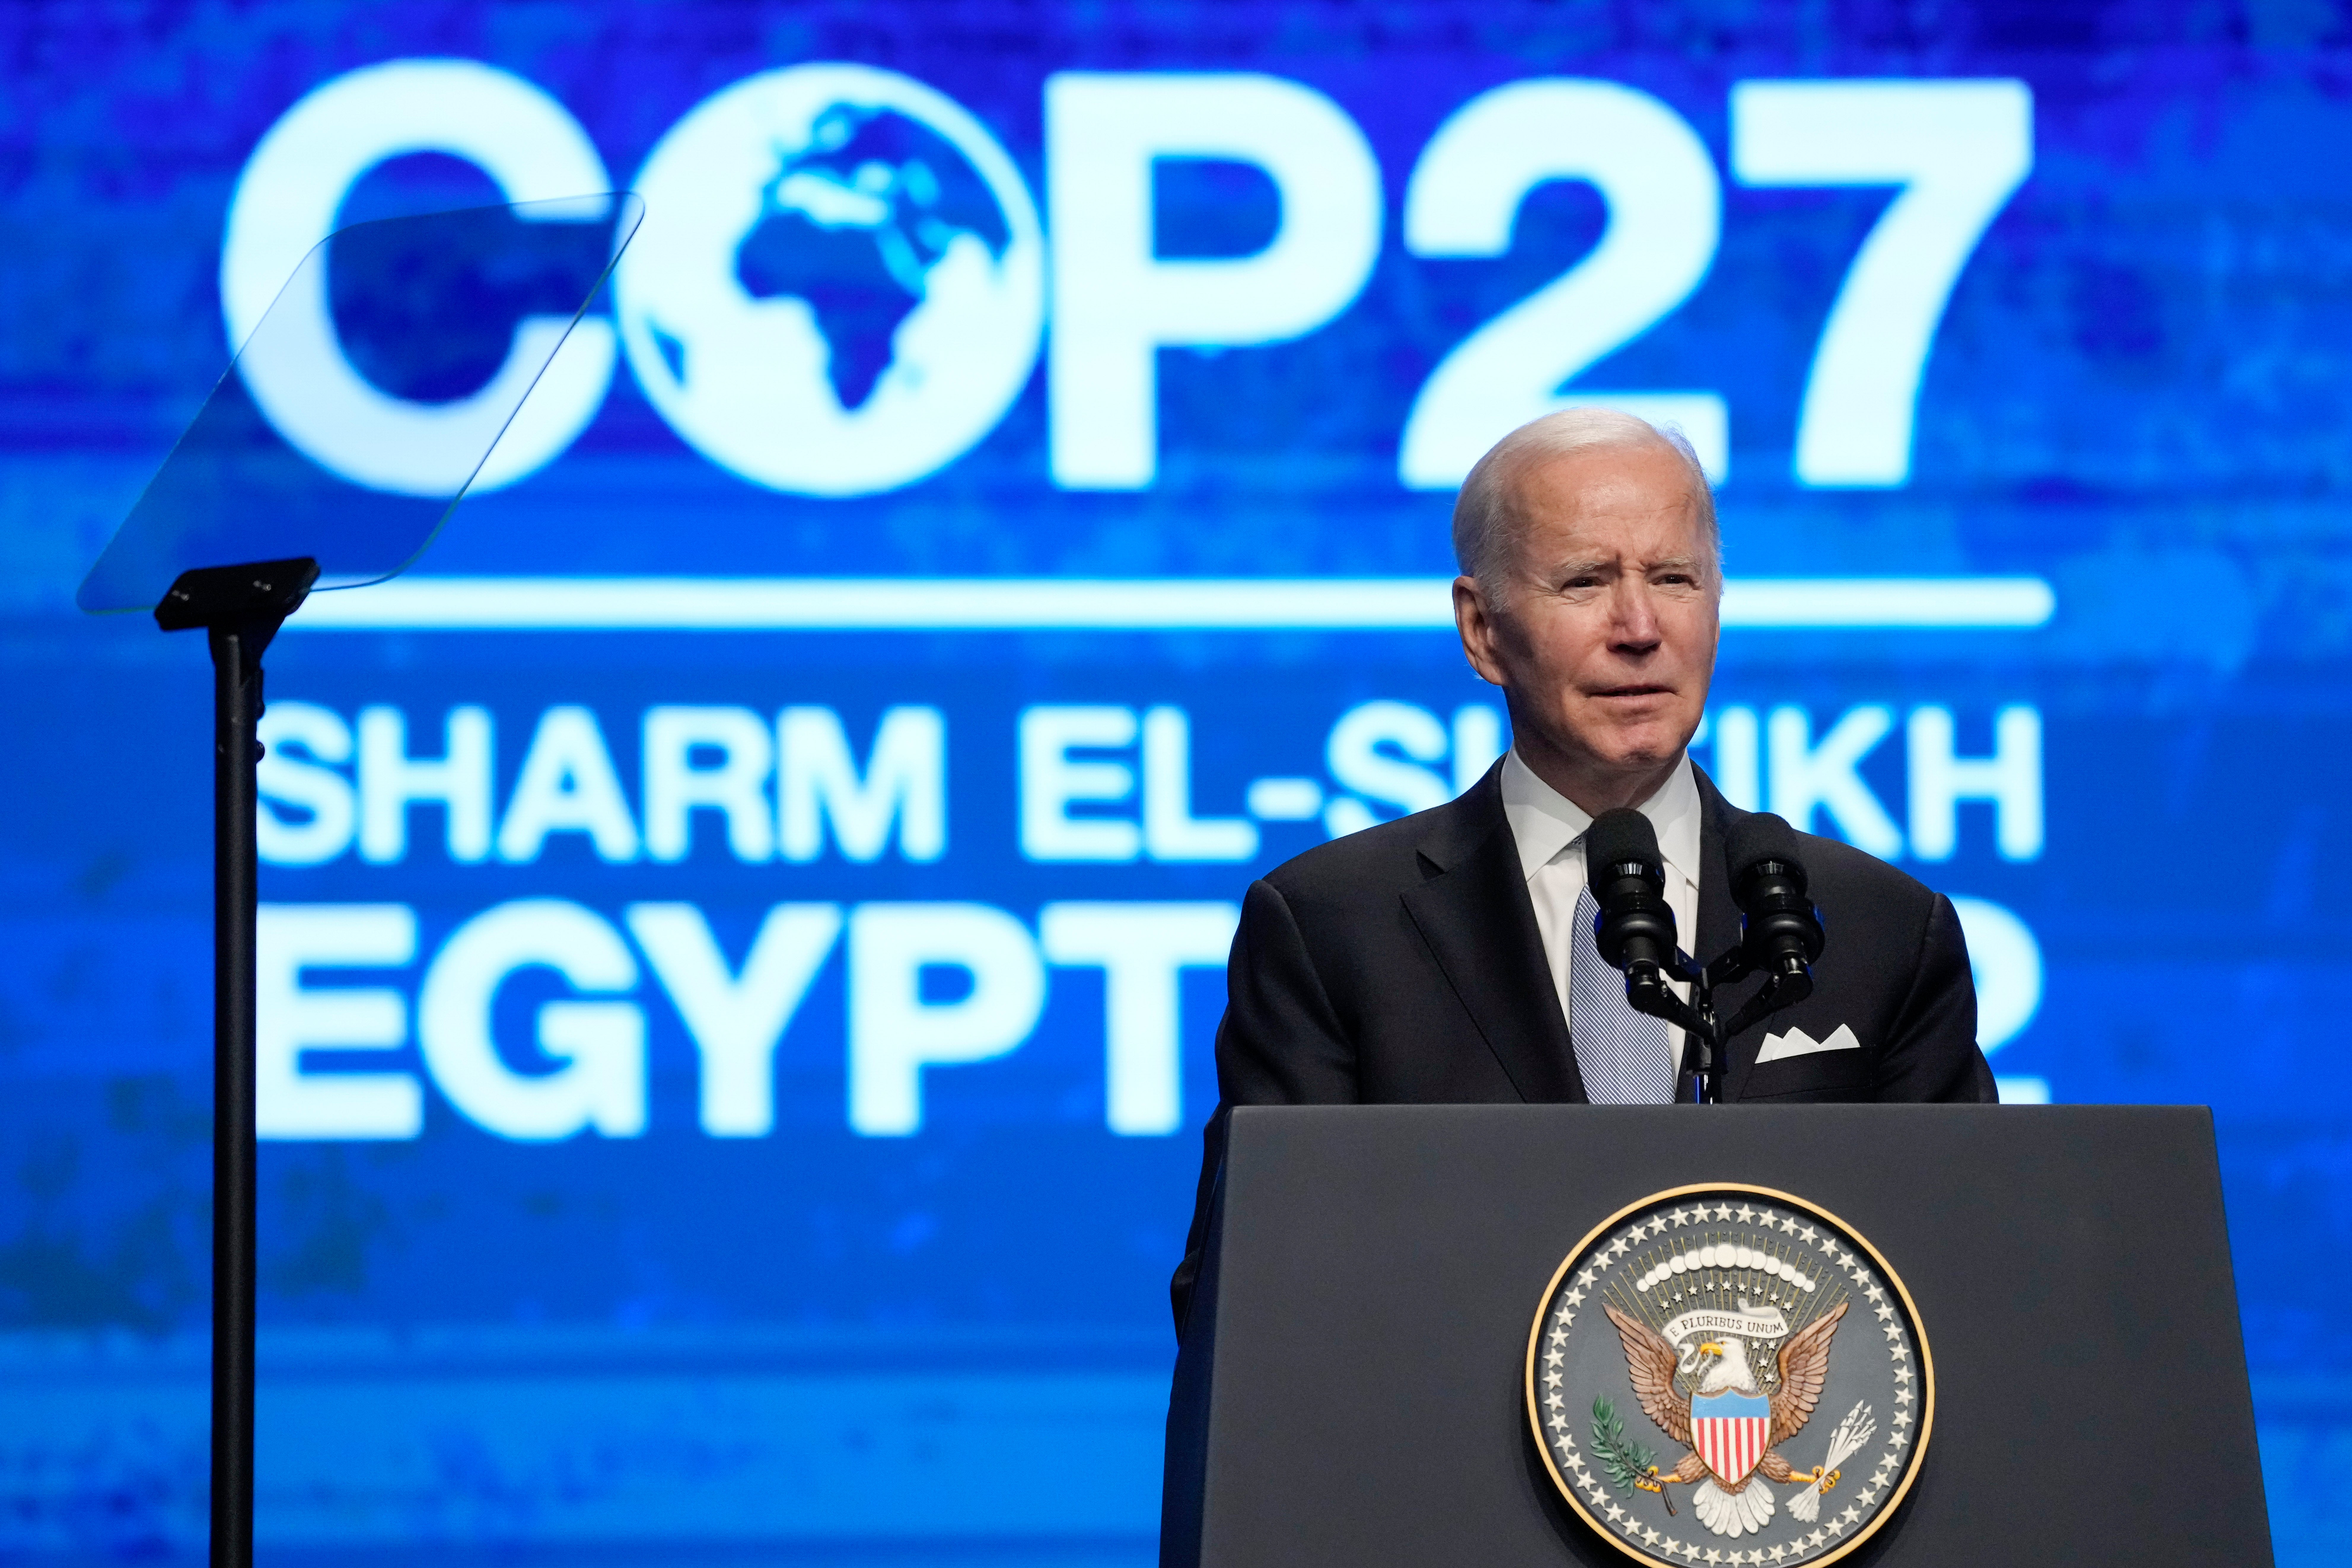 Biden addressing the summit